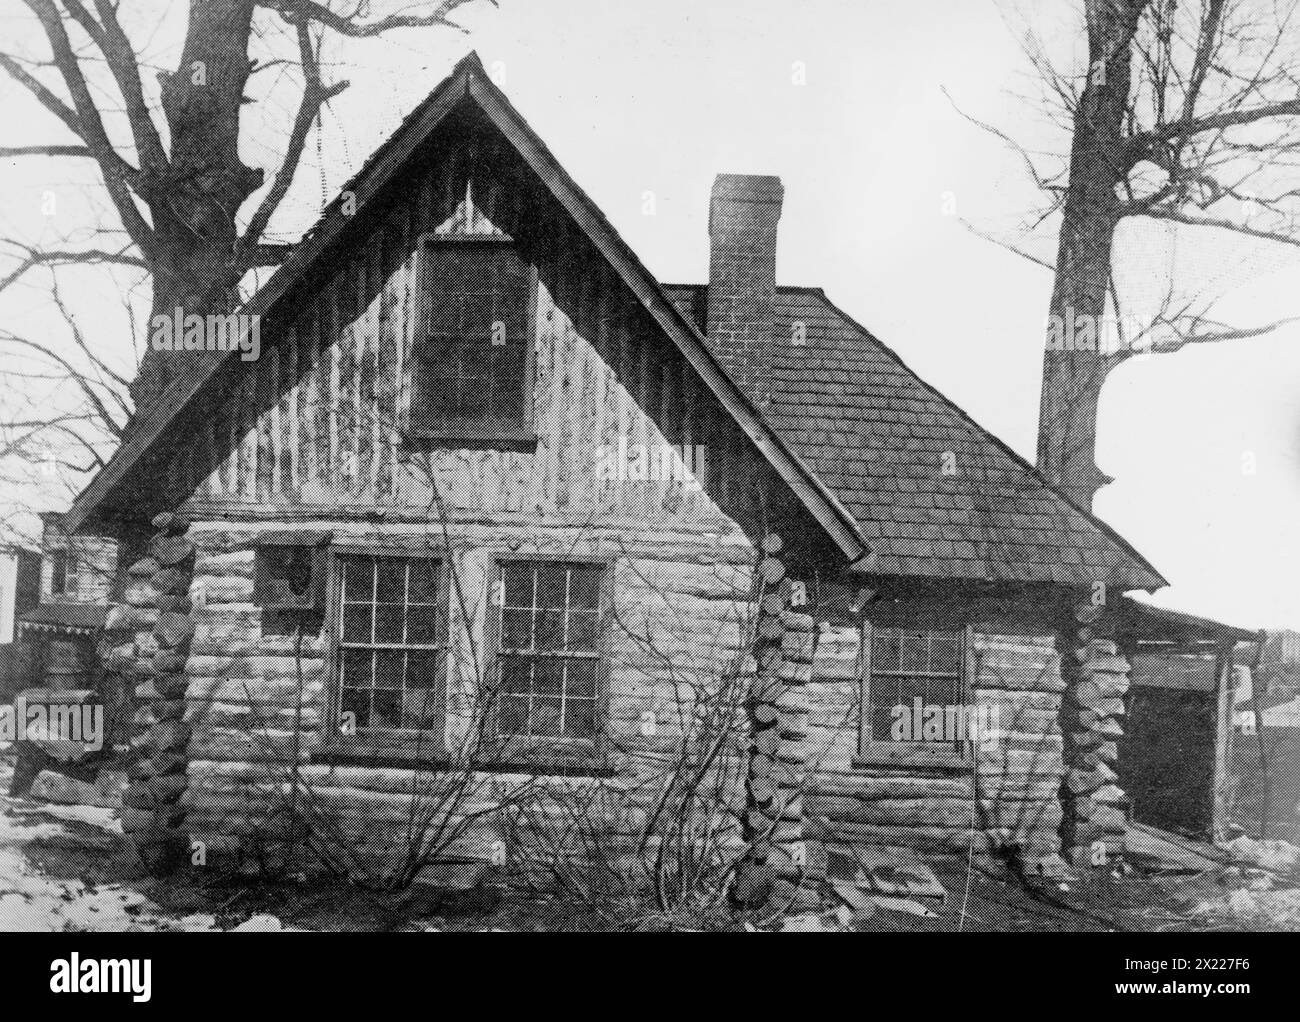 Former home of Joaquin Miller (poet), Wash., D.C., between c1910 and c1915. Stock Photo